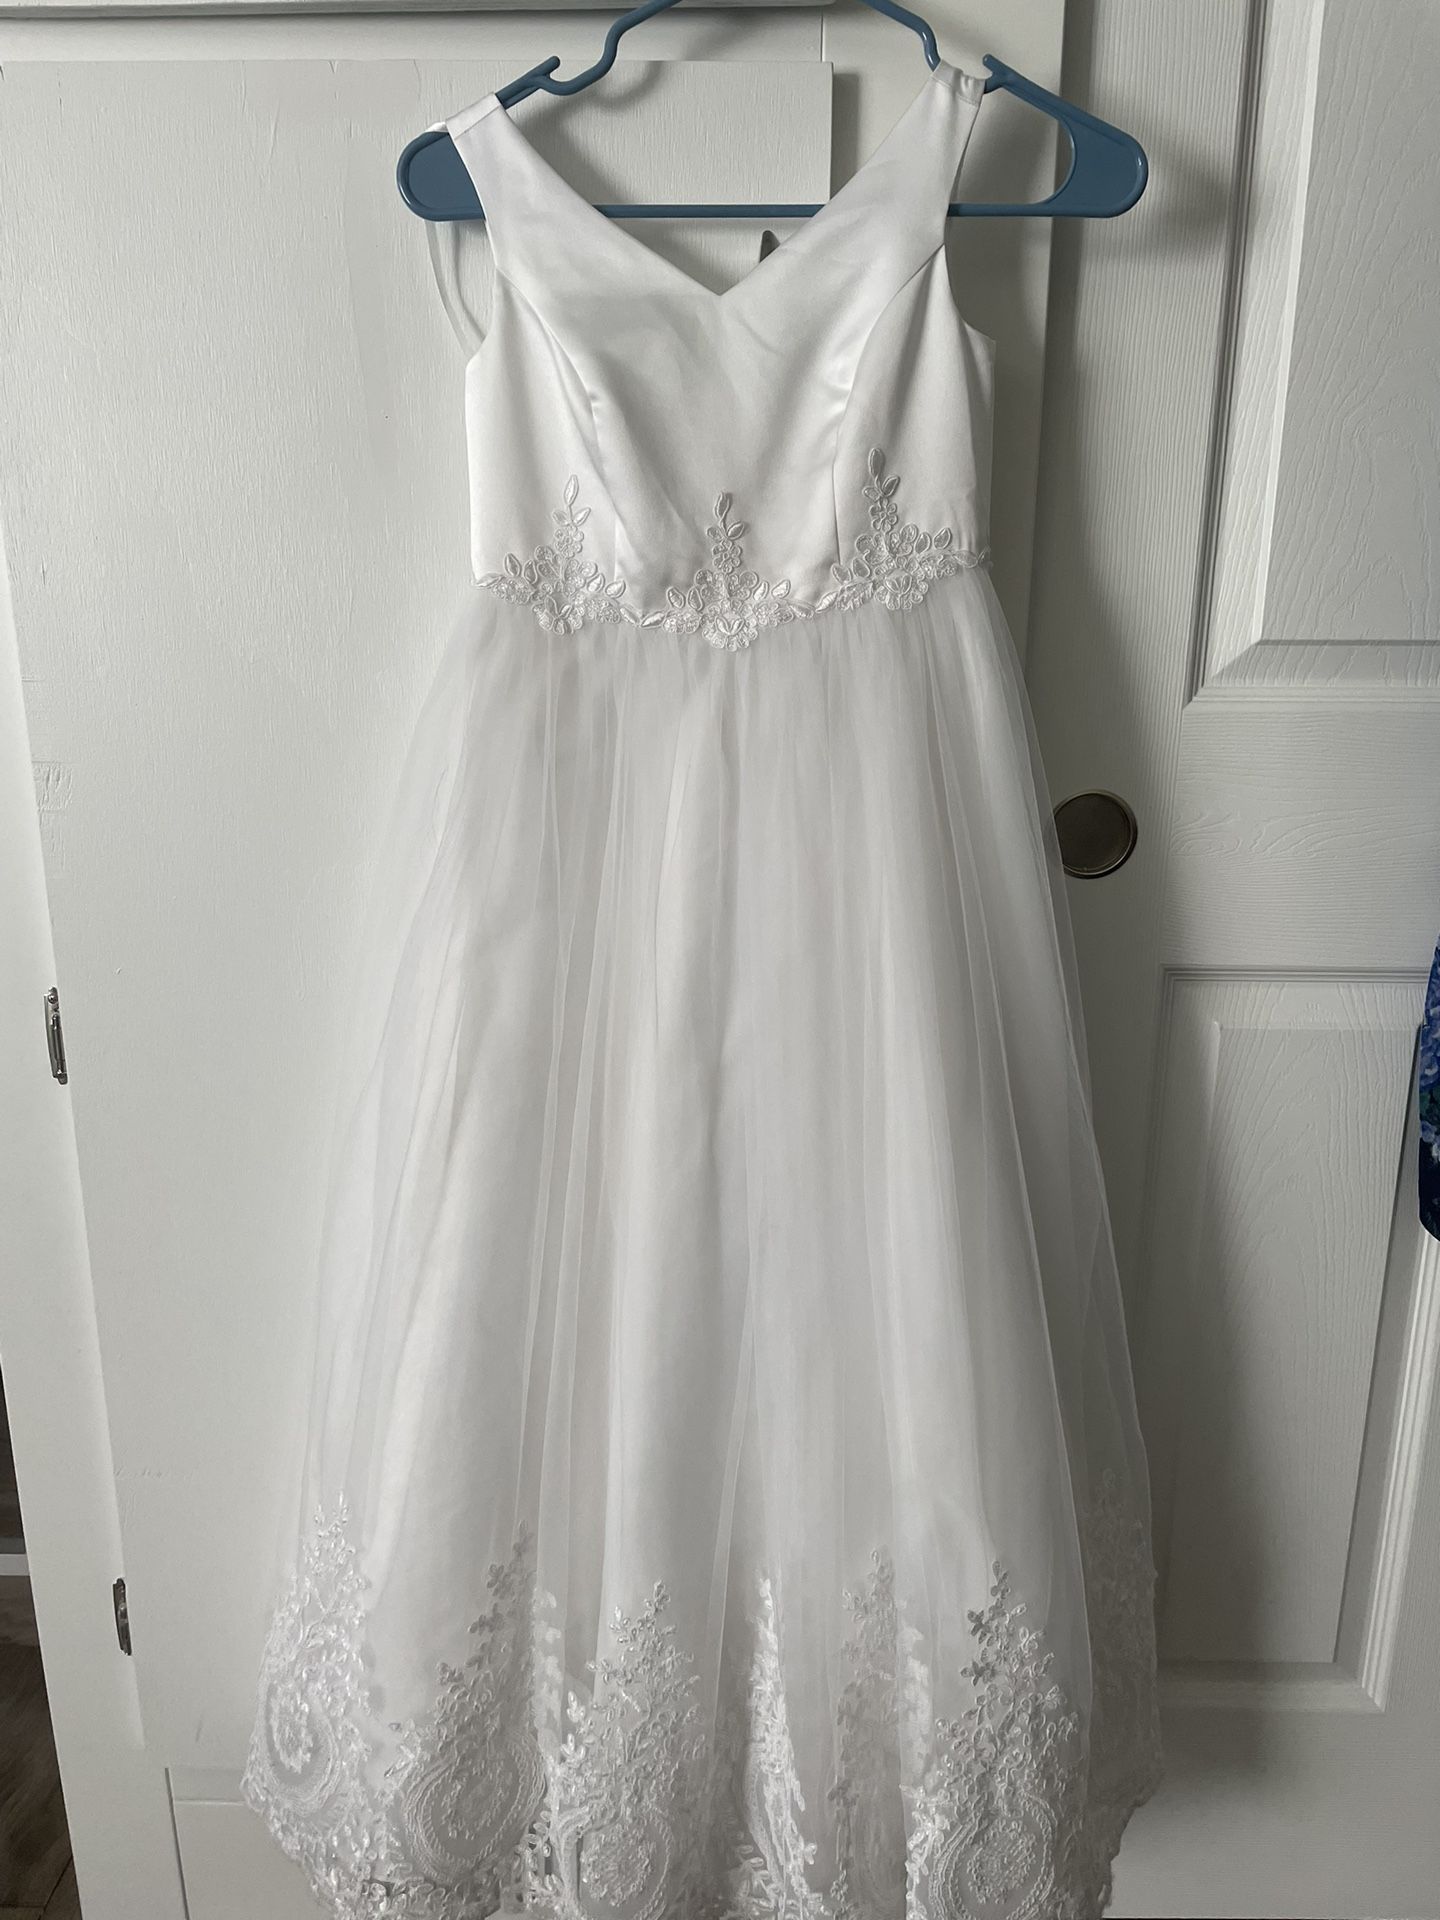 White Dress Size 8 